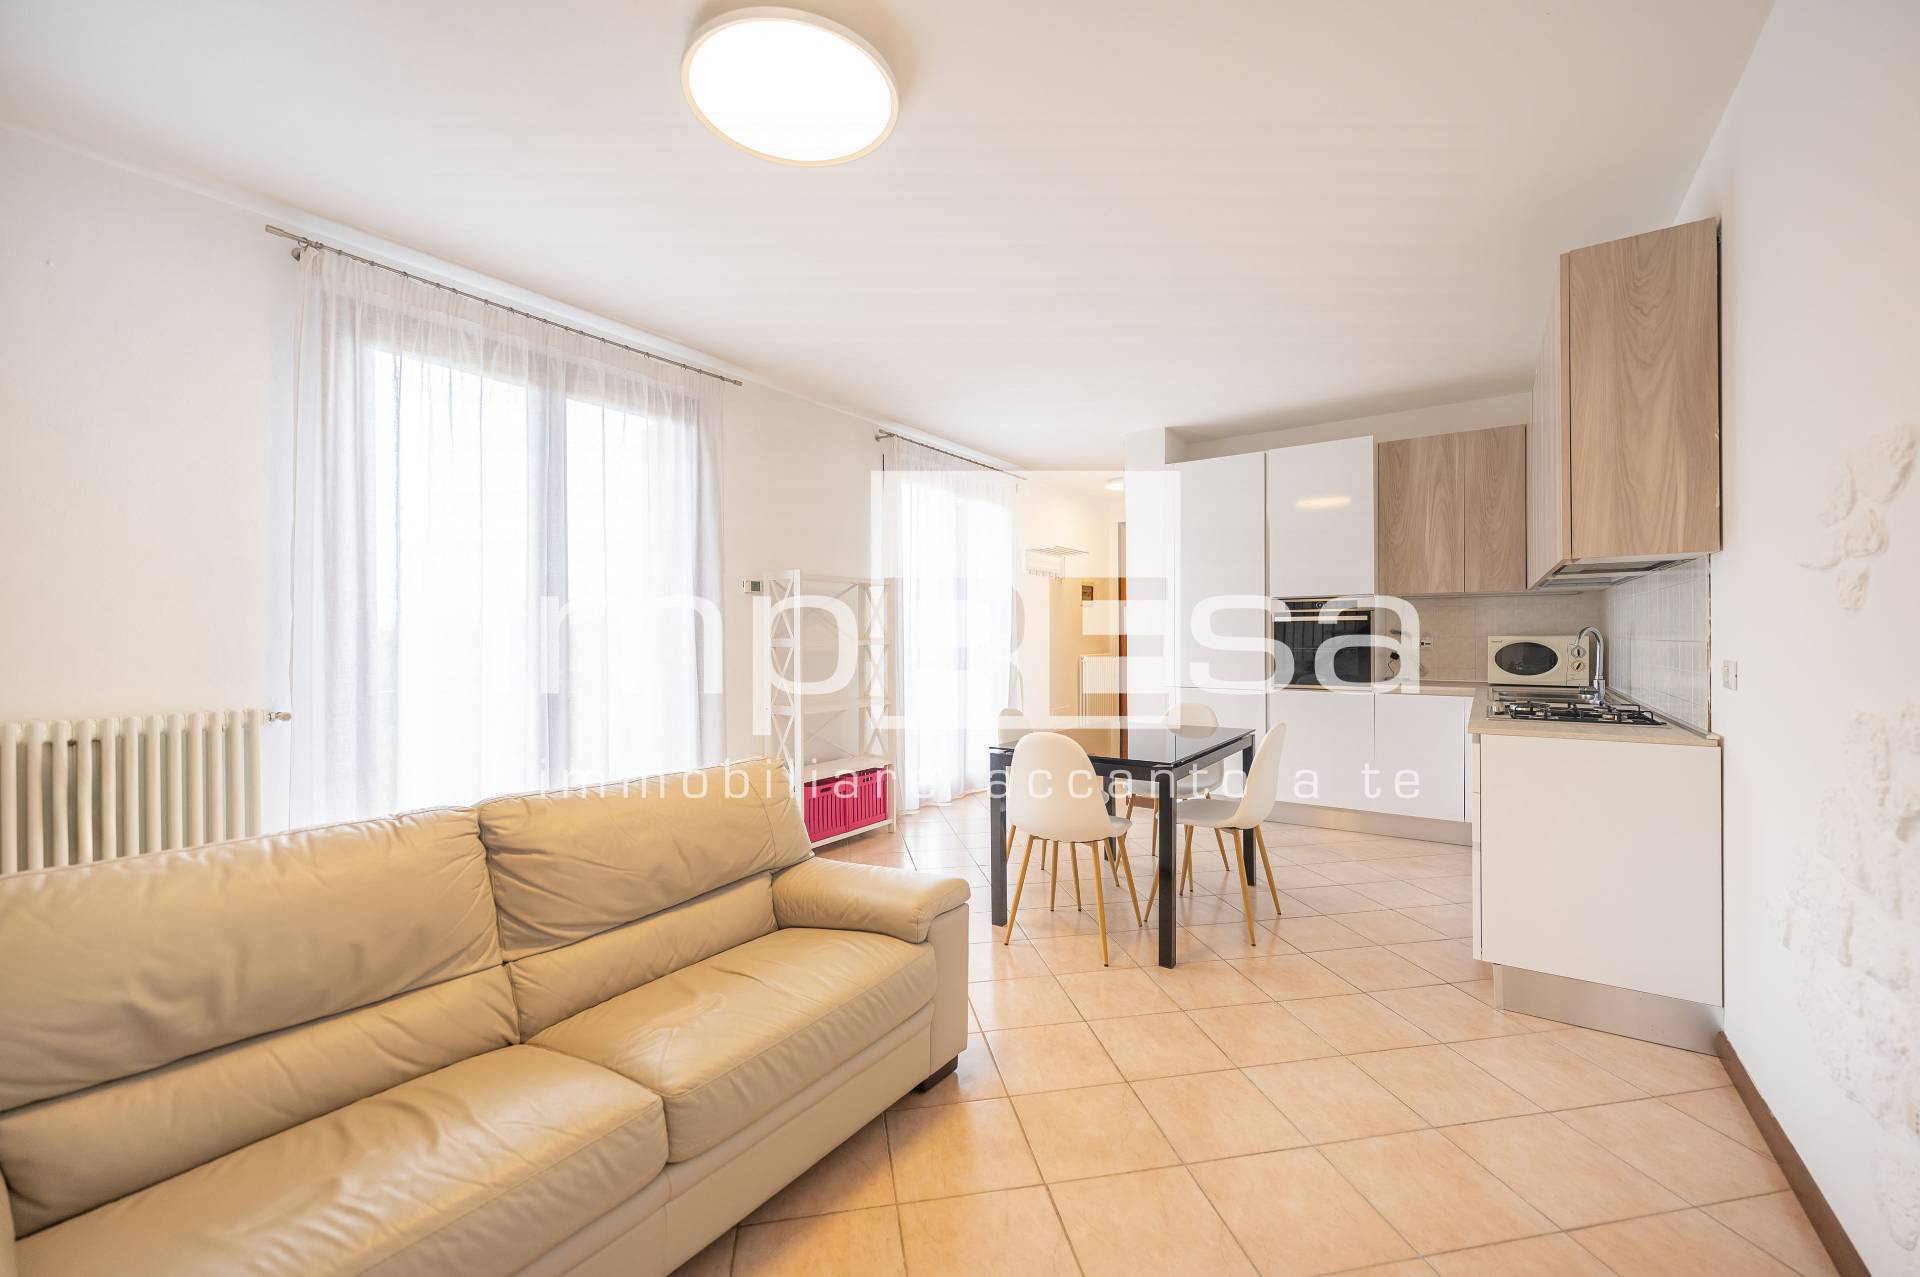 Appartamento in vendita a Zero Branco, 2 locali, prezzo € 118.000 | PortaleAgenzieImmobiliari.it